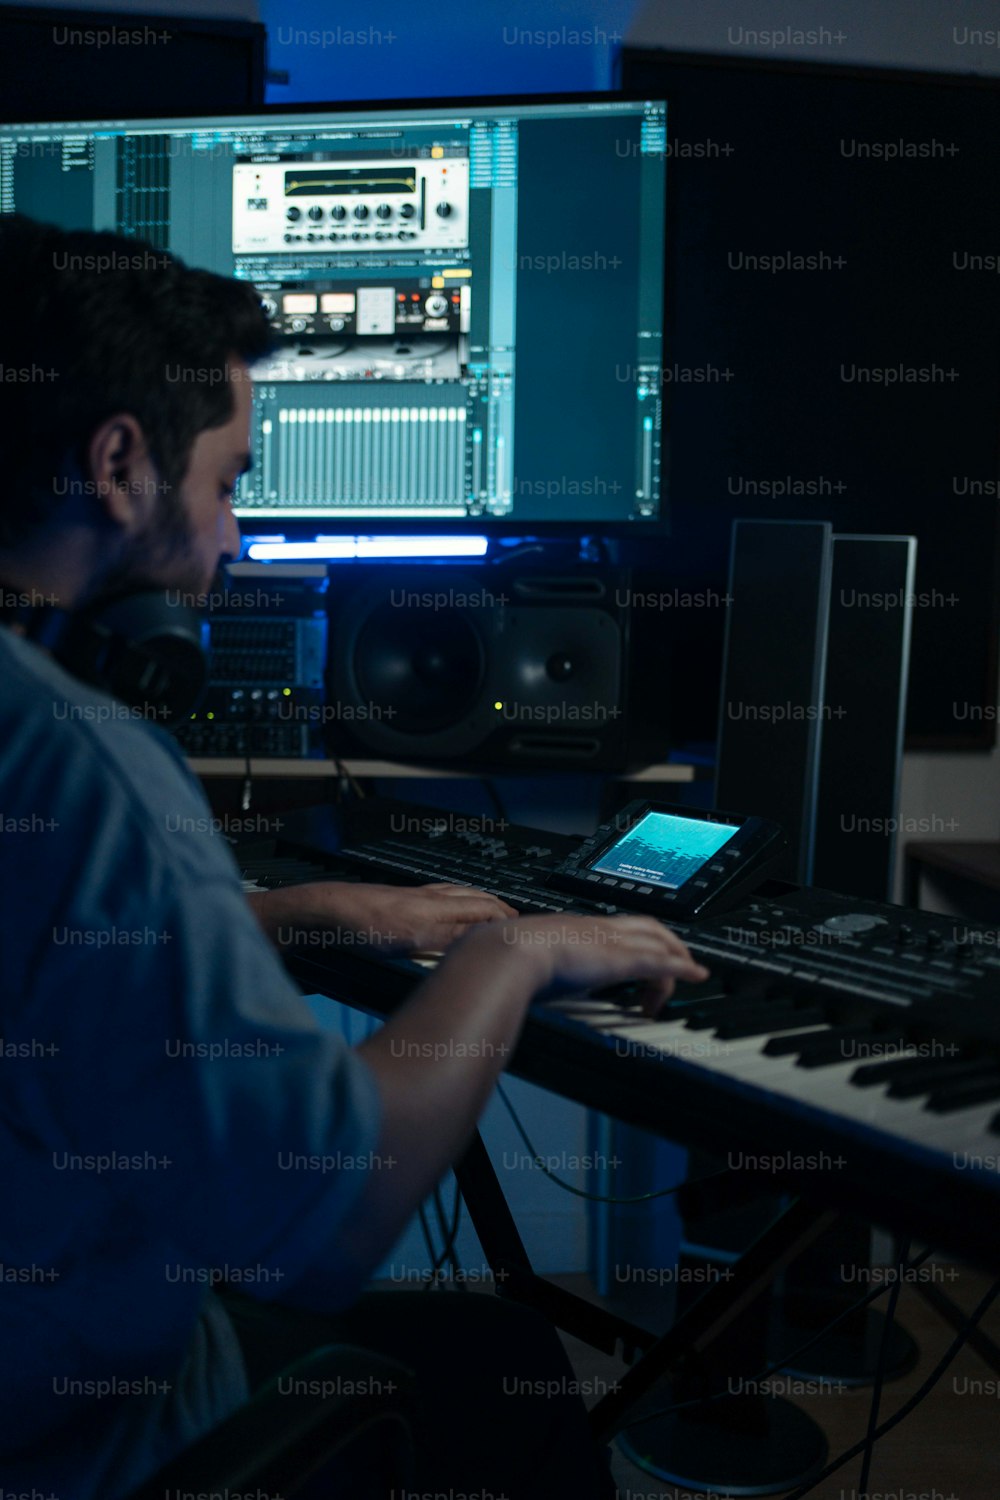 Un uomo seduto a una tastiera davanti a un monitor